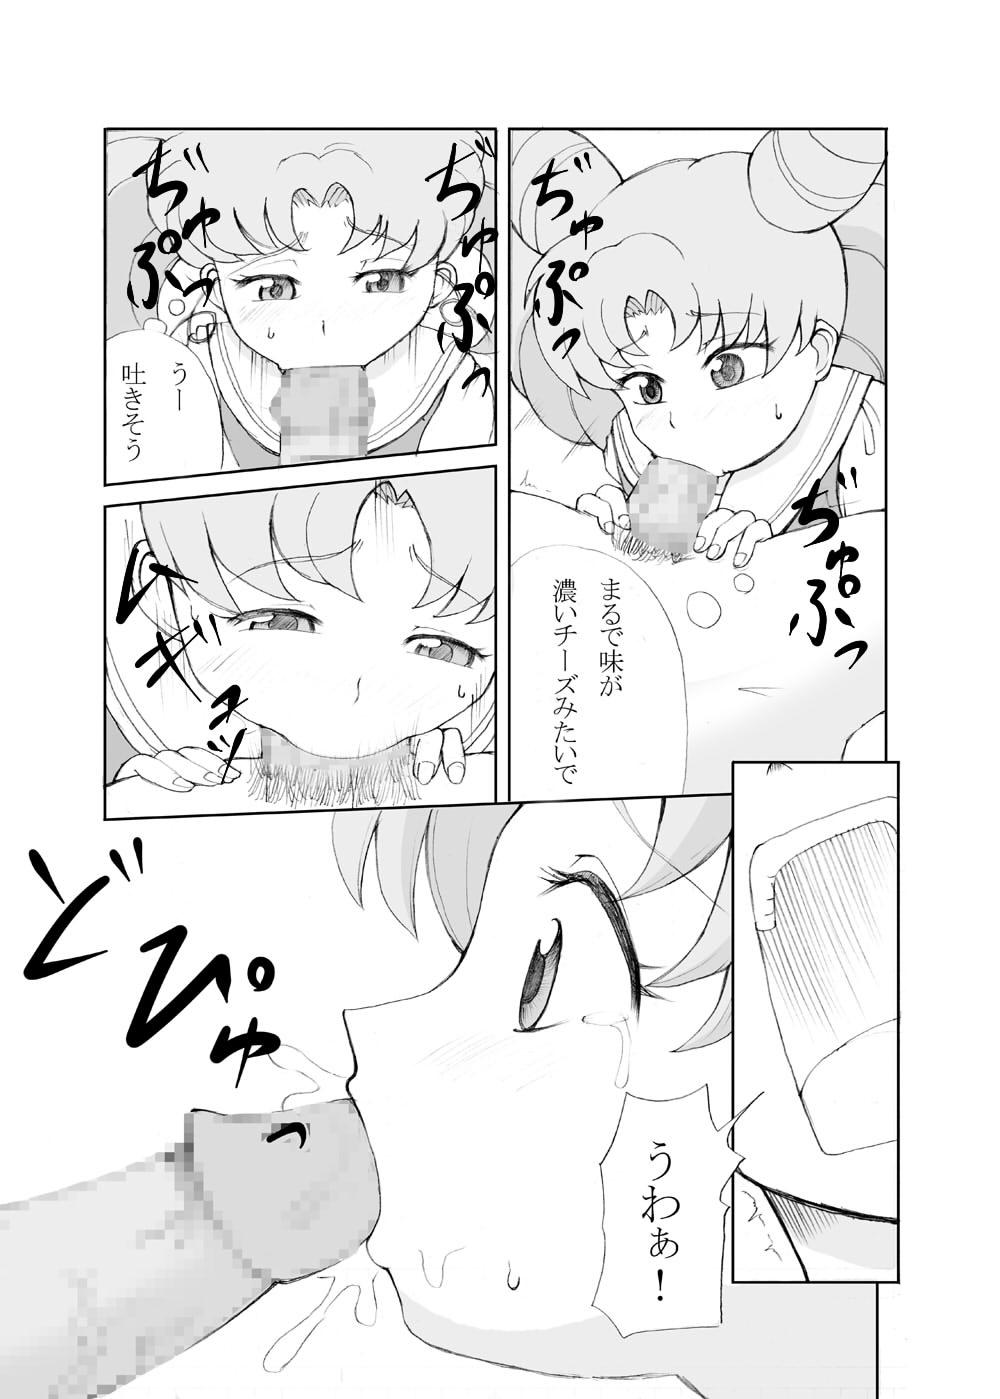 Analsex Petit Usagi - Sailor moon Infiel - Page 9